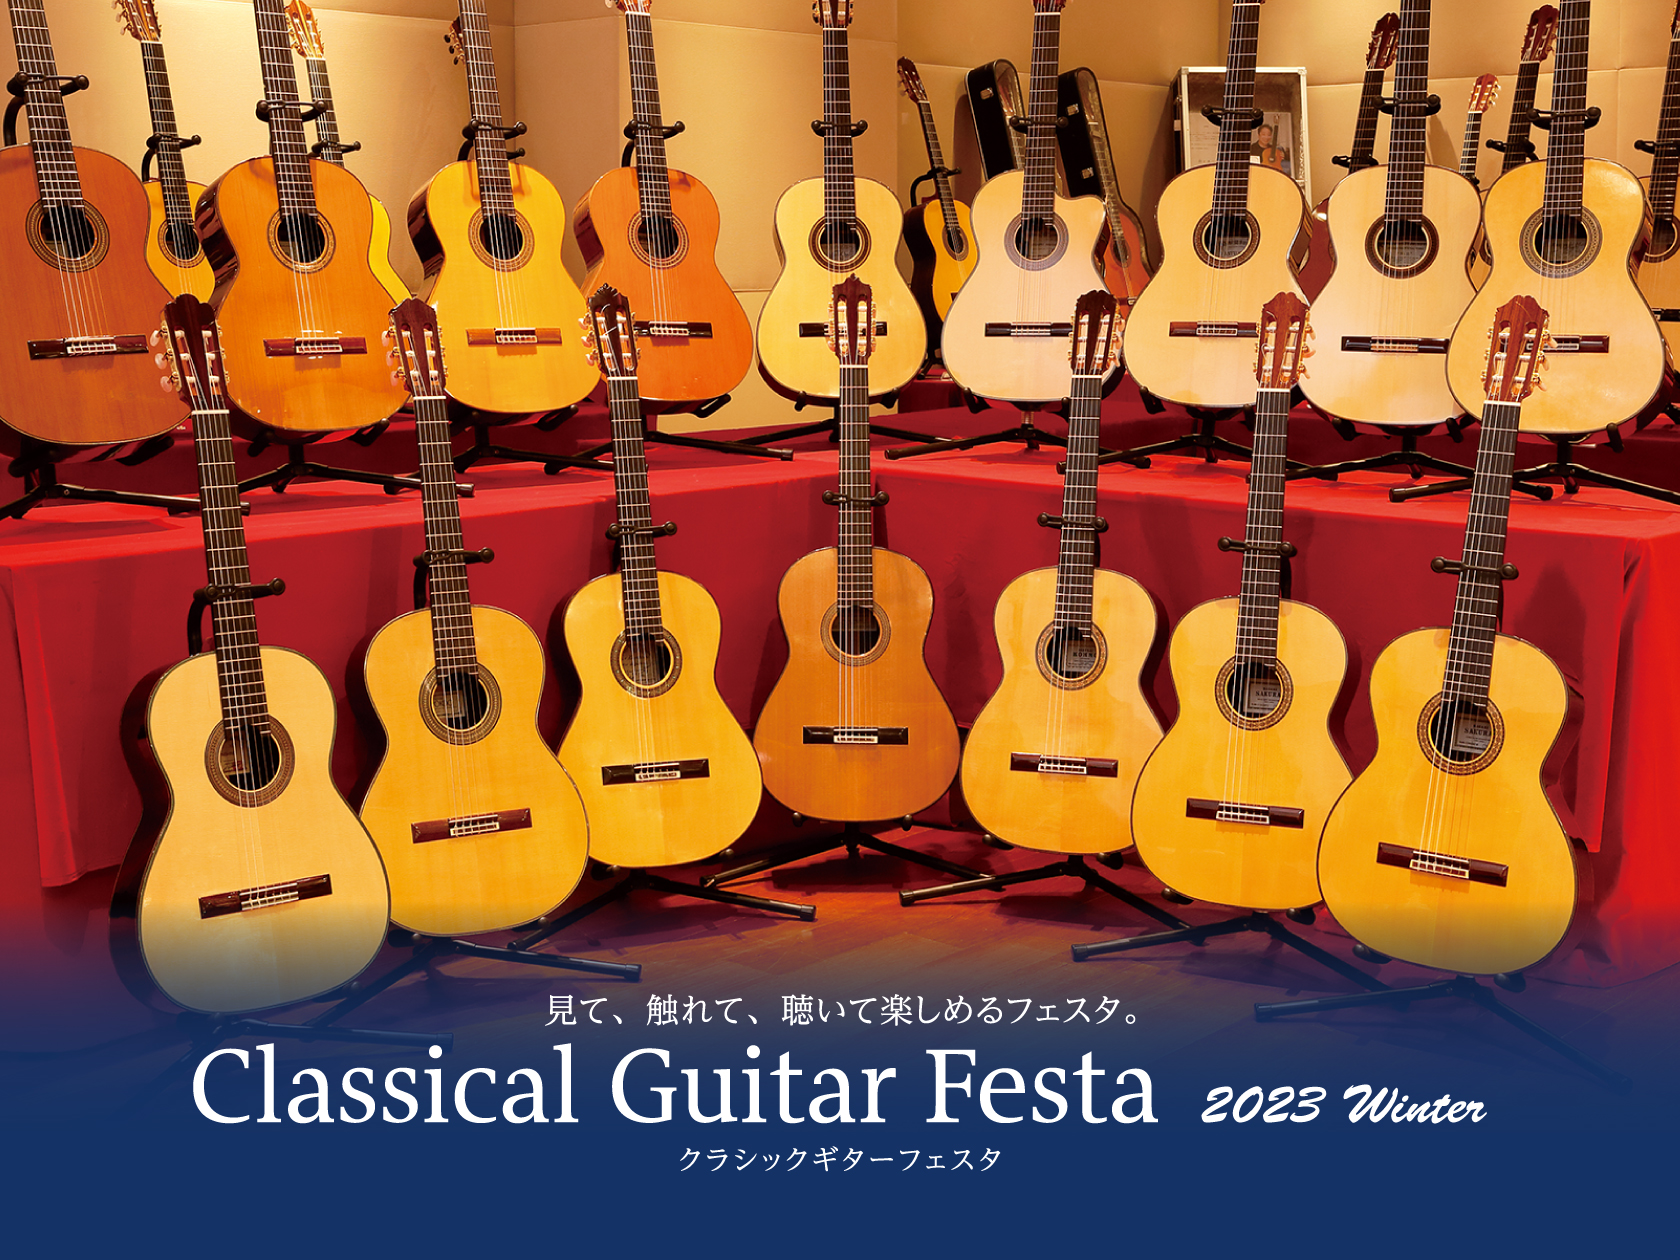 毎年夏と冬に開催しておりますクラシックギターフェスタ。今回もクラシックギターフェスタin磐田を開催致します！！魅力的なギター展示はもちろん、イベントも盛りだくさん。こちらは事前予約が必要ですので、ぜひ、下記参照のうえお申込みをお願い致します。 お申込み方法 すべてのイベントのご予約開始は12月01日 […]